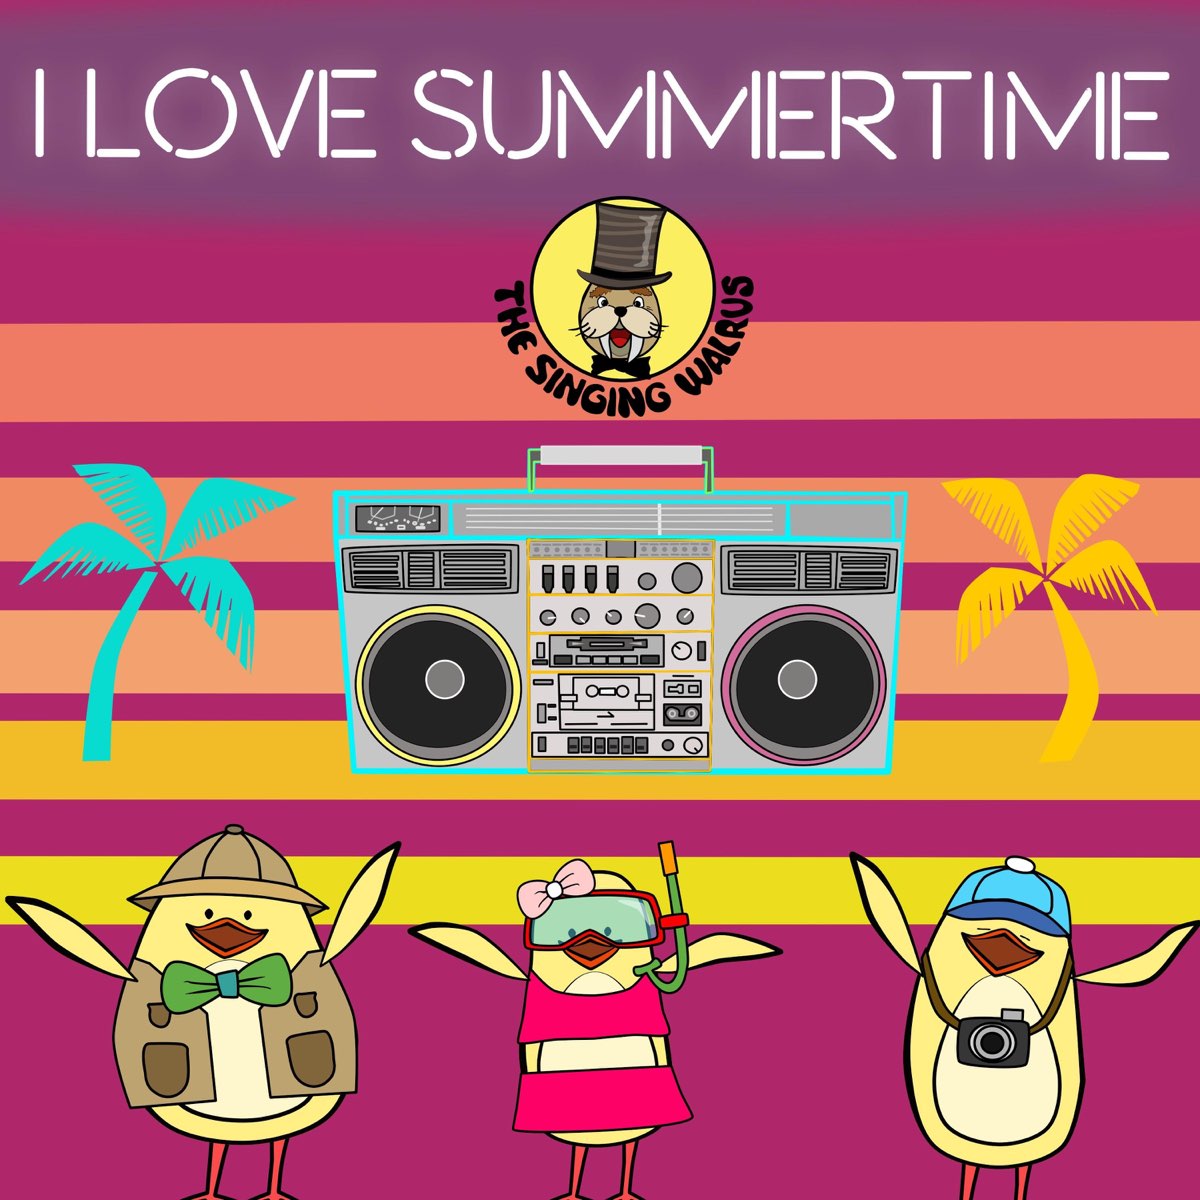 Summer Songs for Kids, I Love Summertime